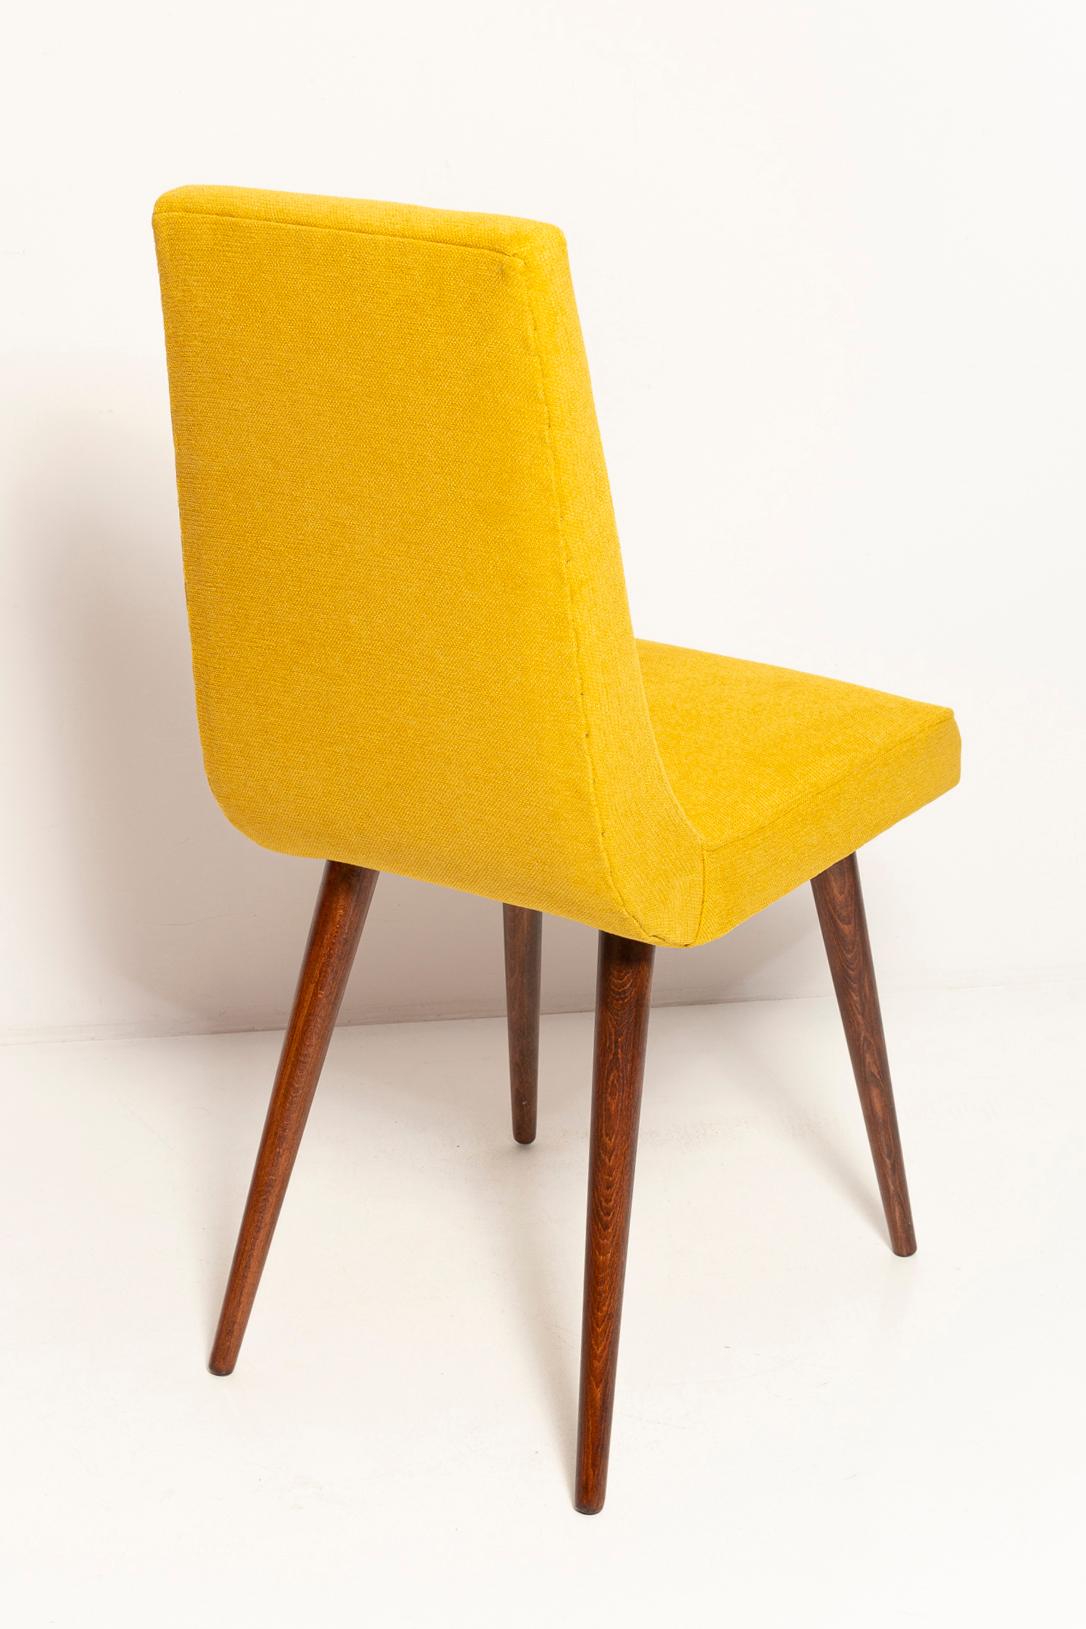 Set of Ten Midcentury Mustard Yellow Wool Chairs, Rajmund Halas Europe, 1960s For Sale 2